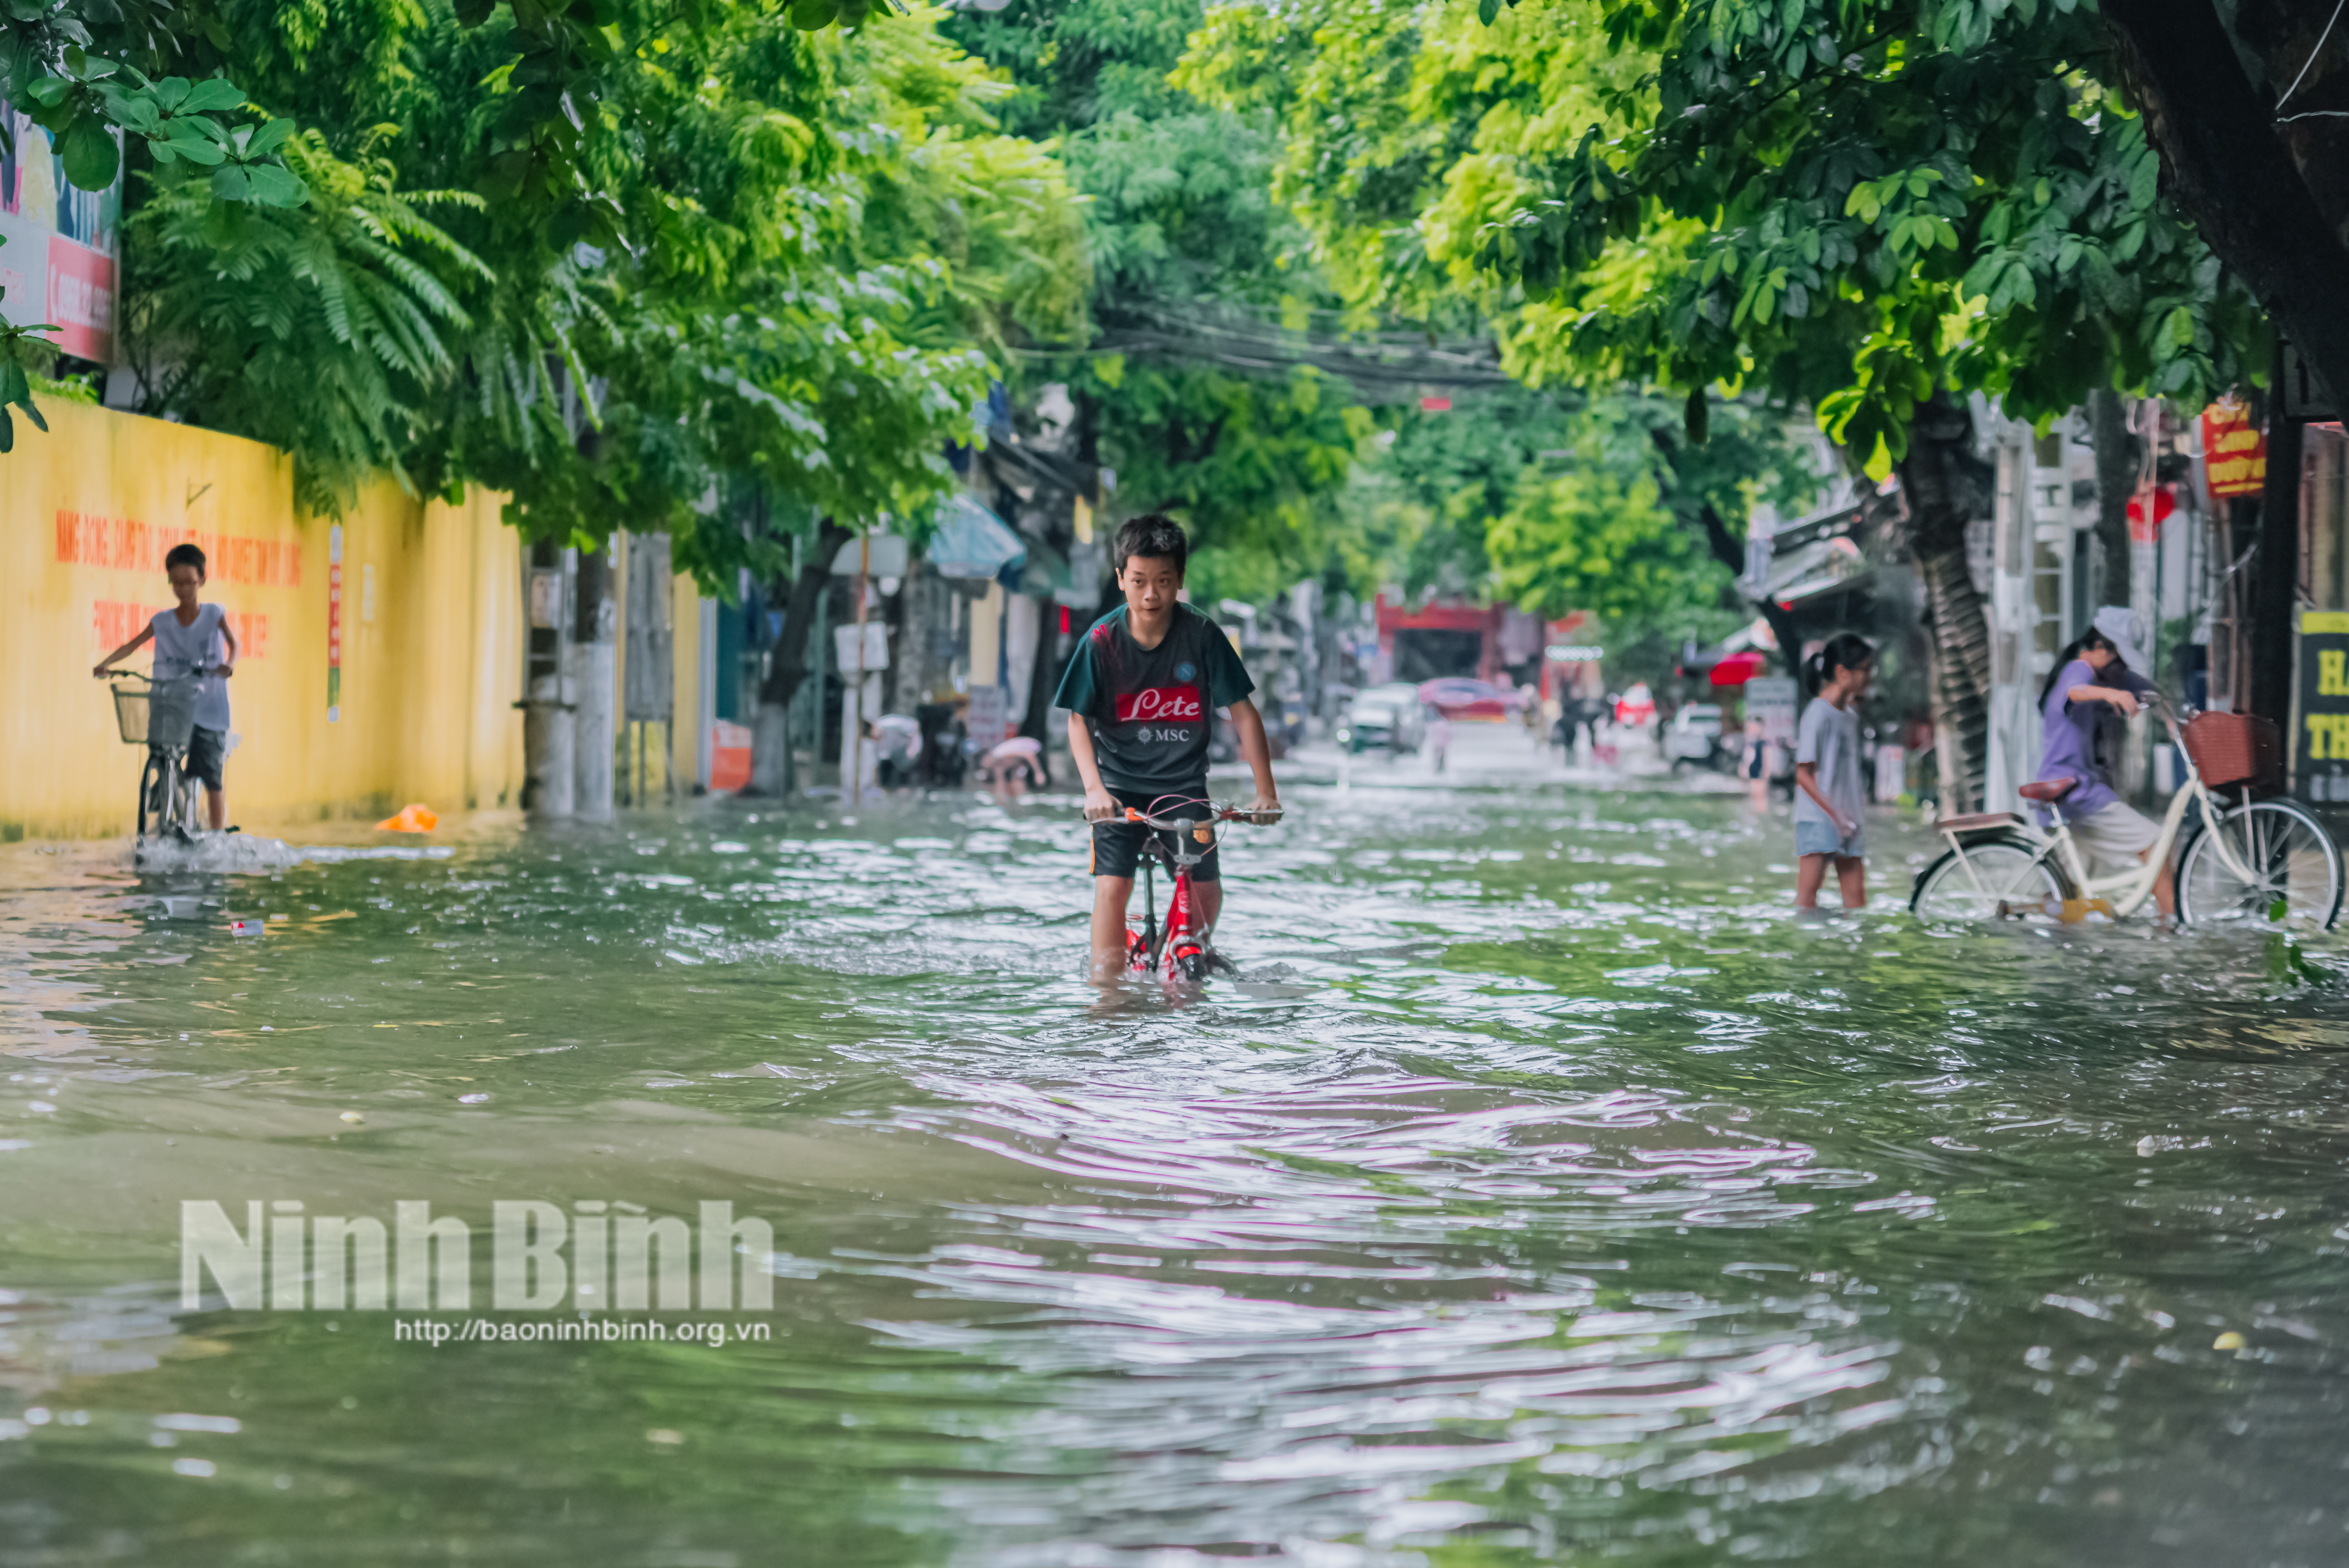 Mưa lớn nhiều tuyến đường ở thành phố Ninh Bình ngập sâu